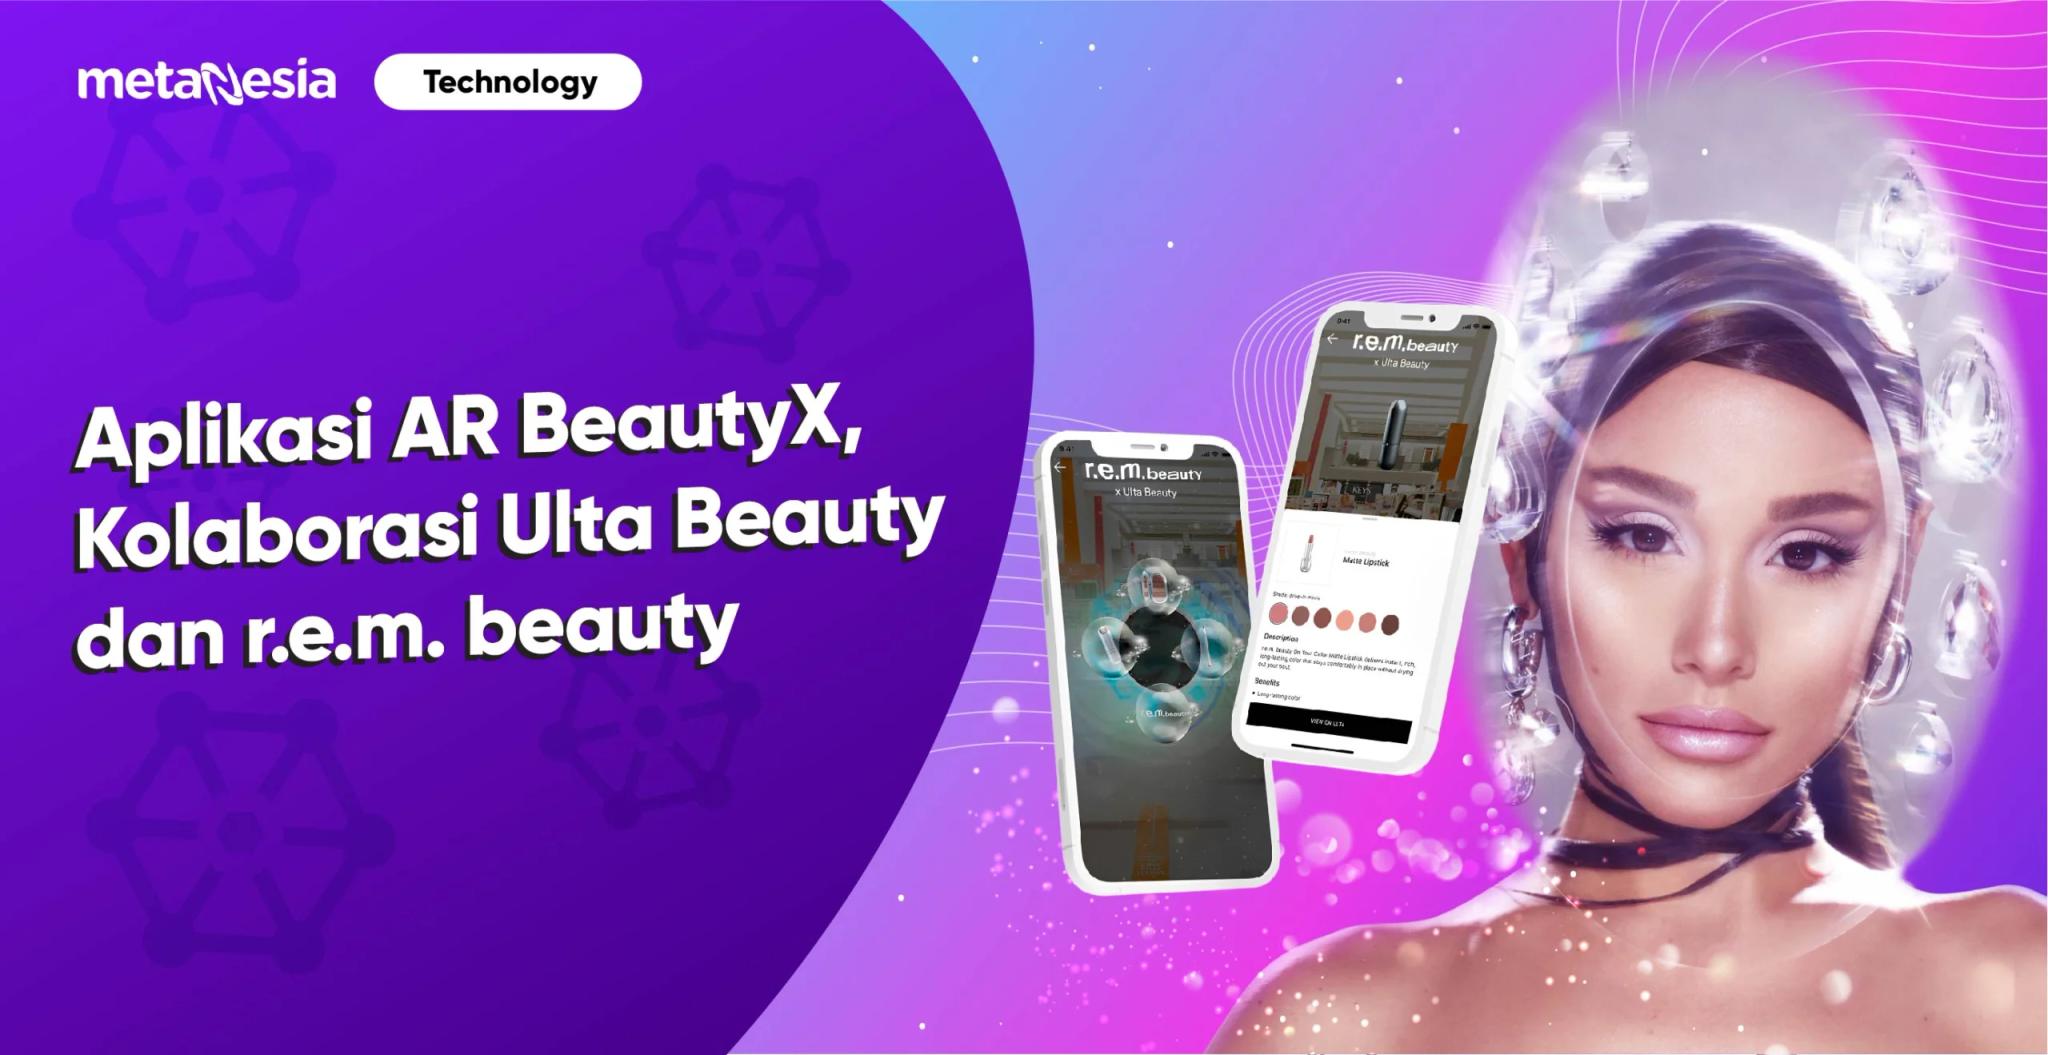 Mencoba Produk Makeup Ariana Grande dengan Aplikasi AR BeautyX Milik Ulta Beauty 